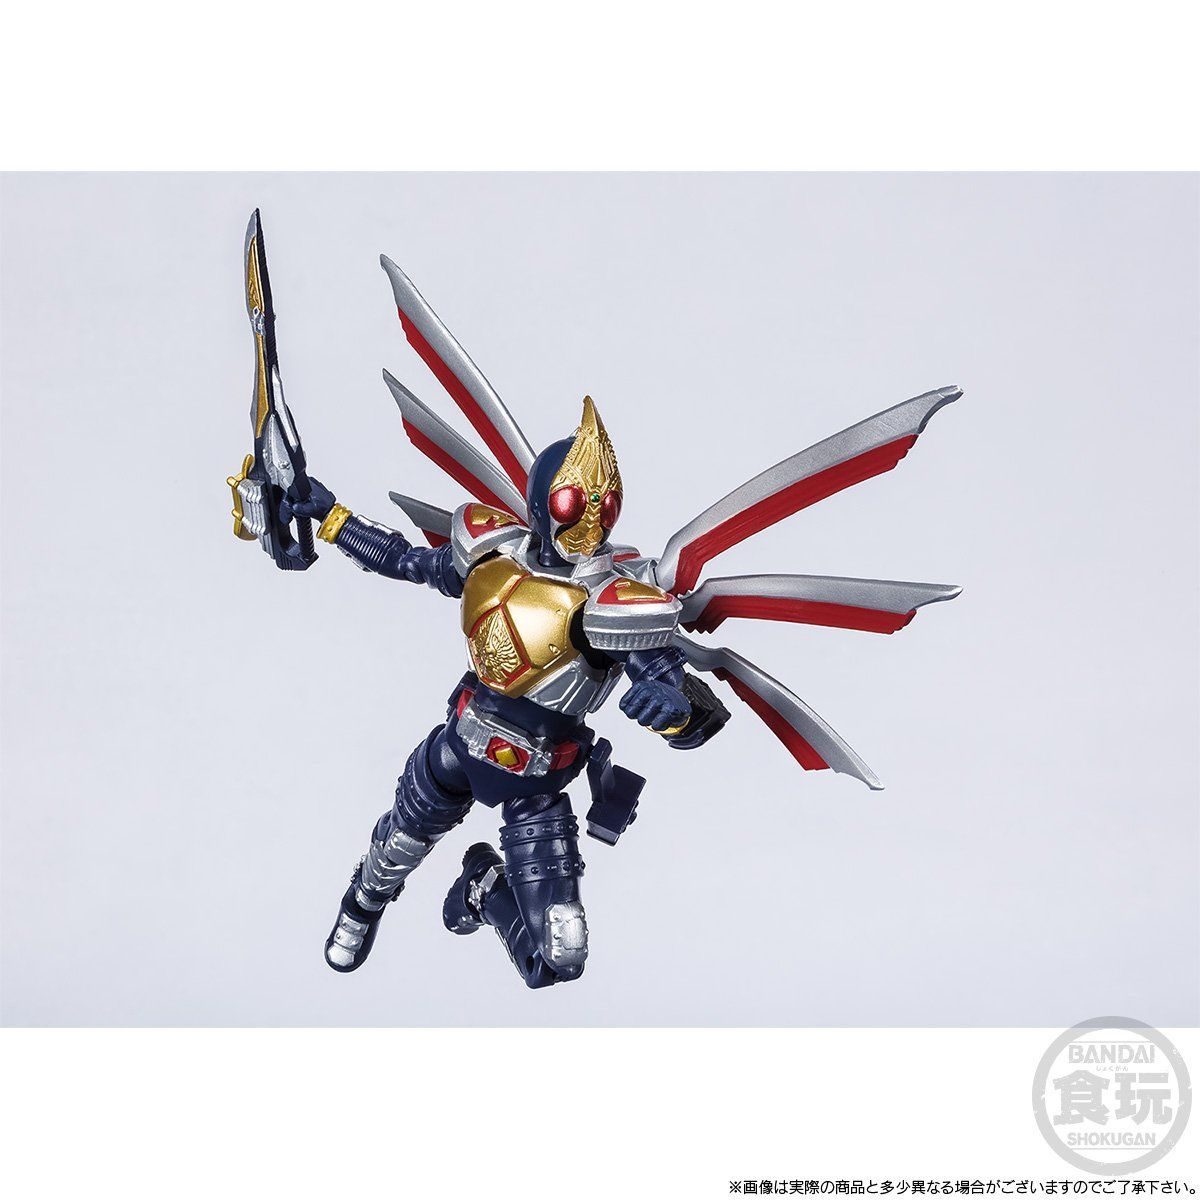 SHODO-X Kamen Rider Blade Jack Form Set